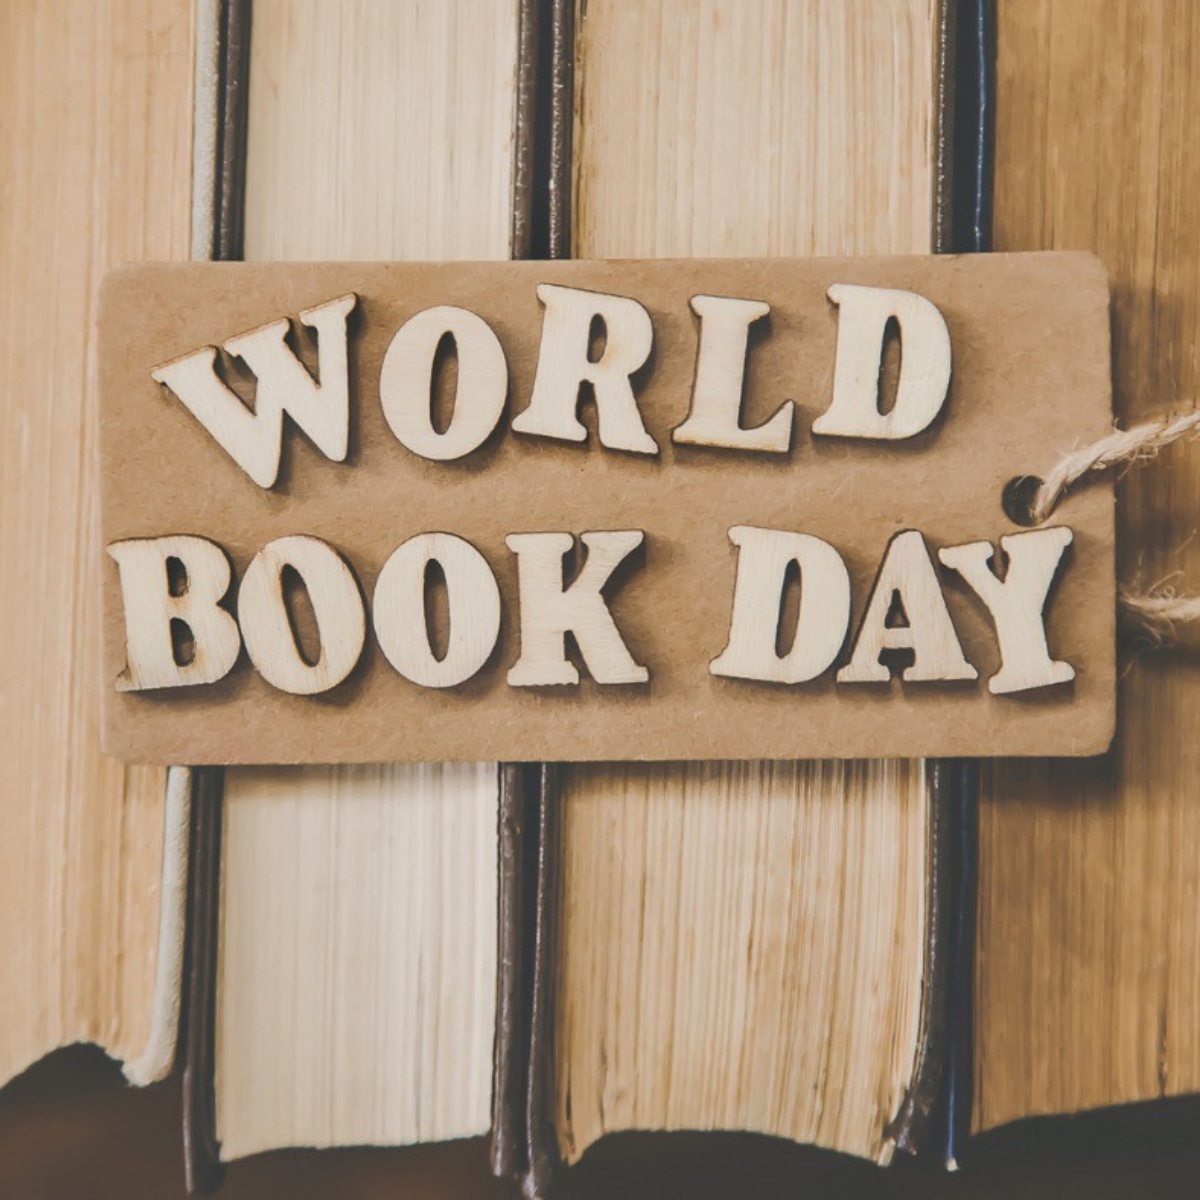 Svetski dan knjige proslavlja se 23. aprila / izvor: wlgt.co.uk